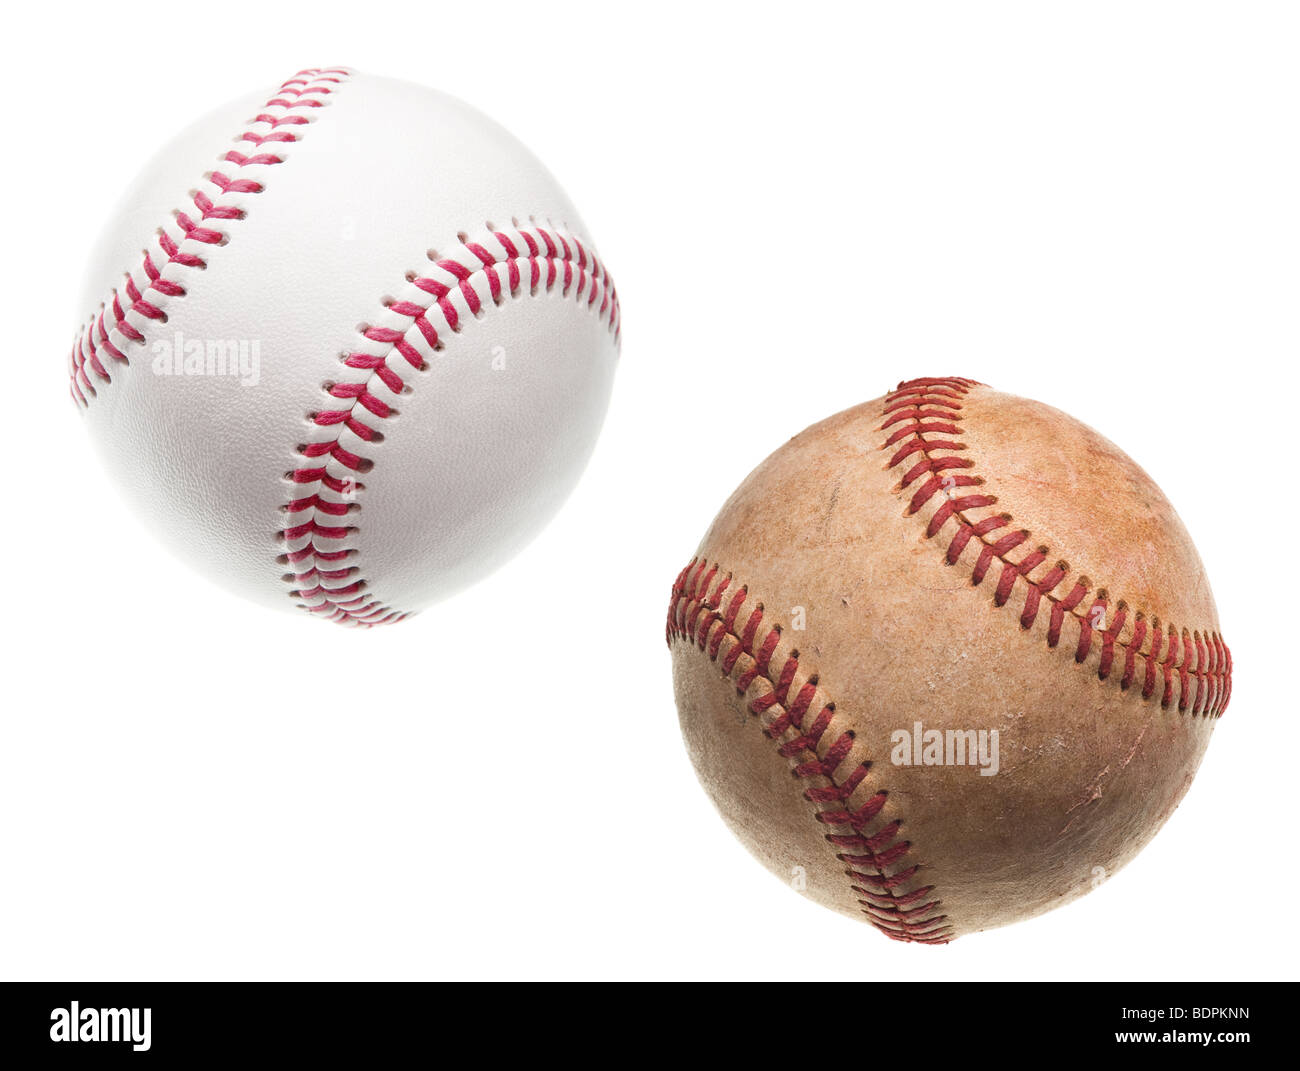 Vecchio e nuovo baseballs con impunture rosse isolato su sfondo bianco Foto Stock